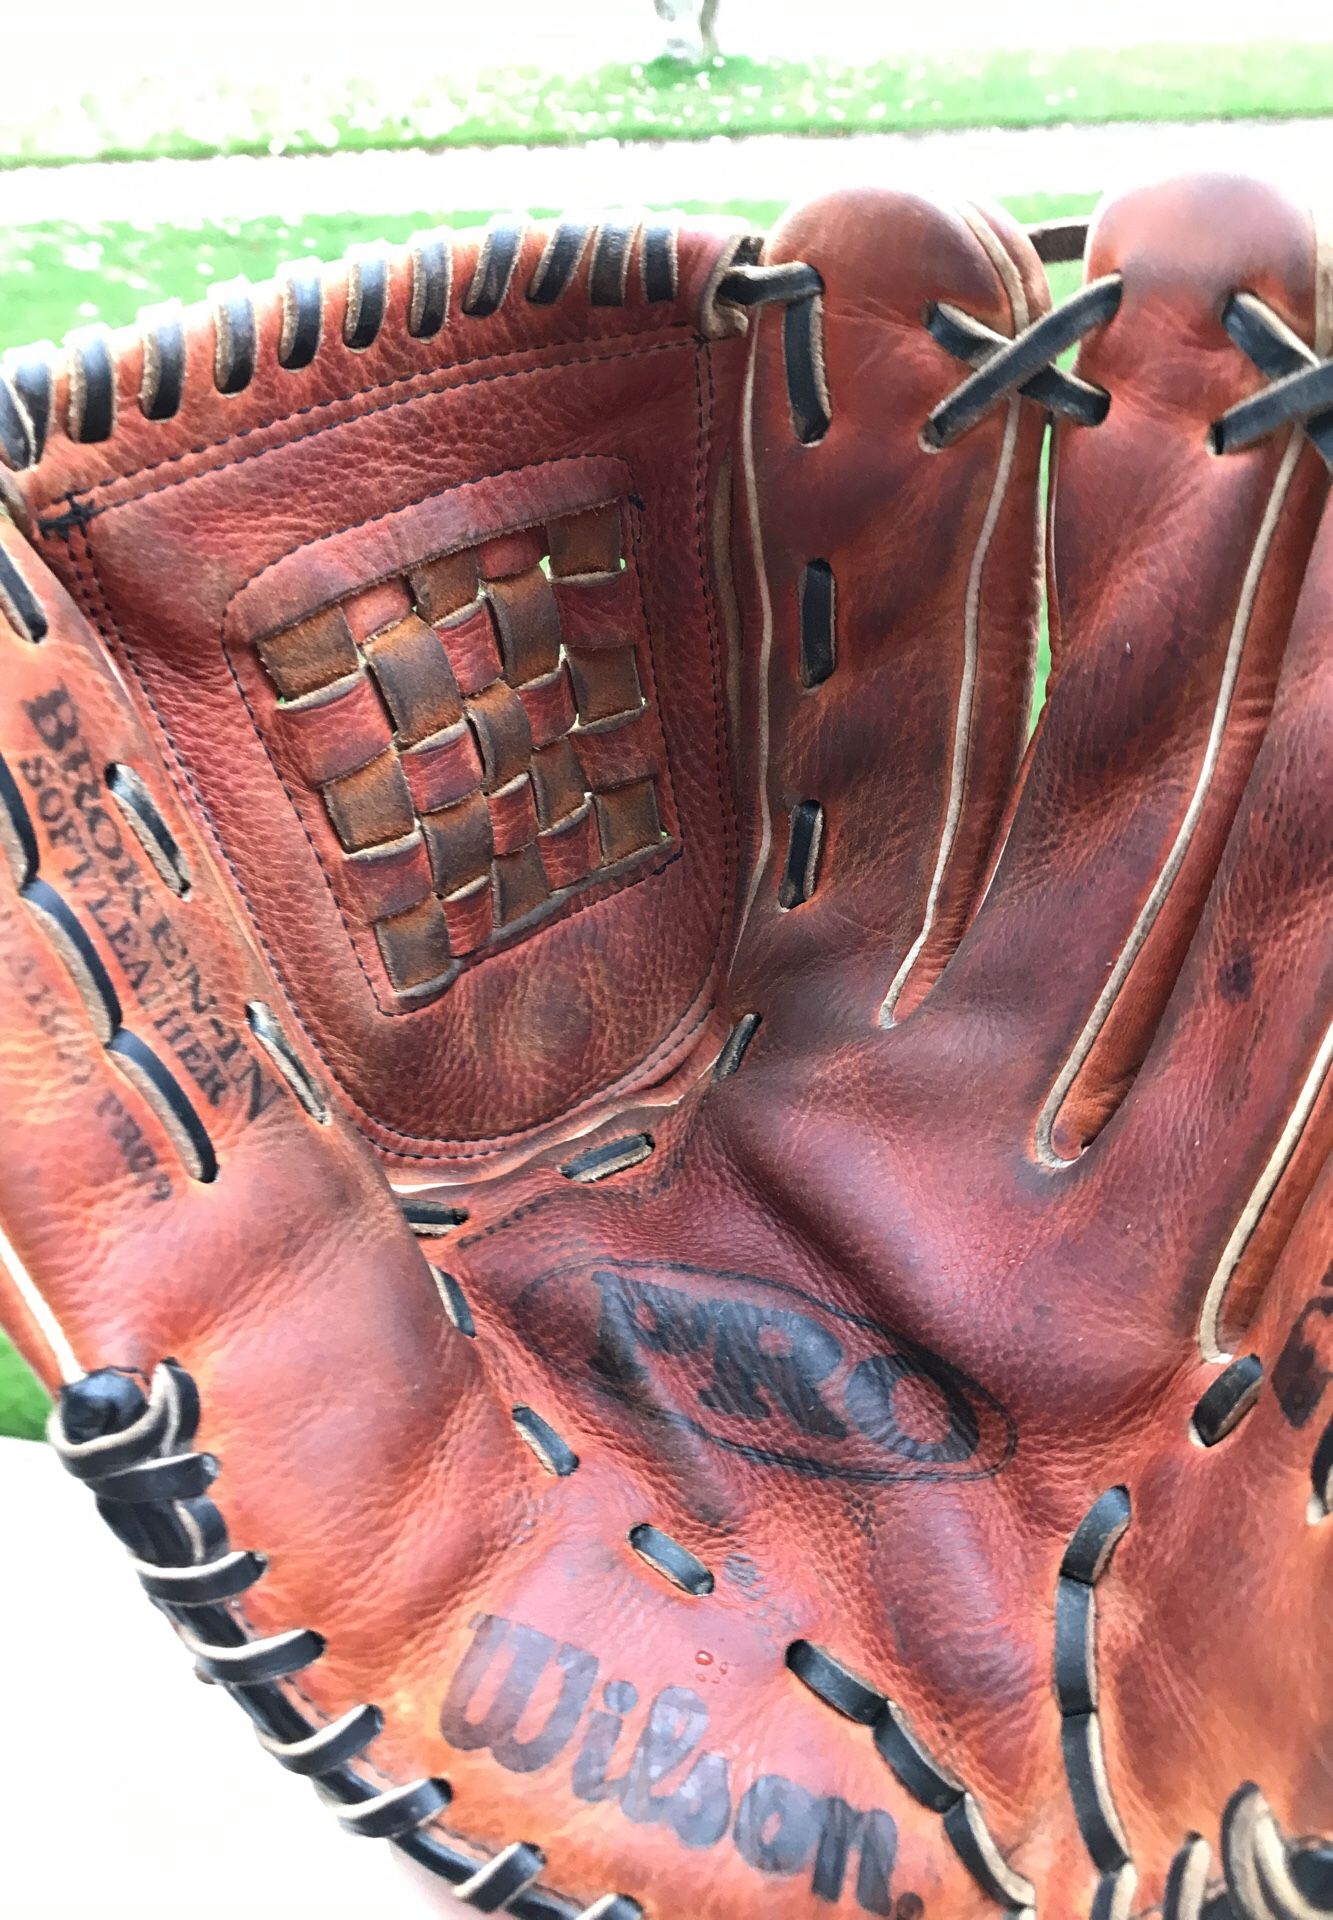 Wilson A1930 Pro9 12.5 inch baseball softball glove / mitt